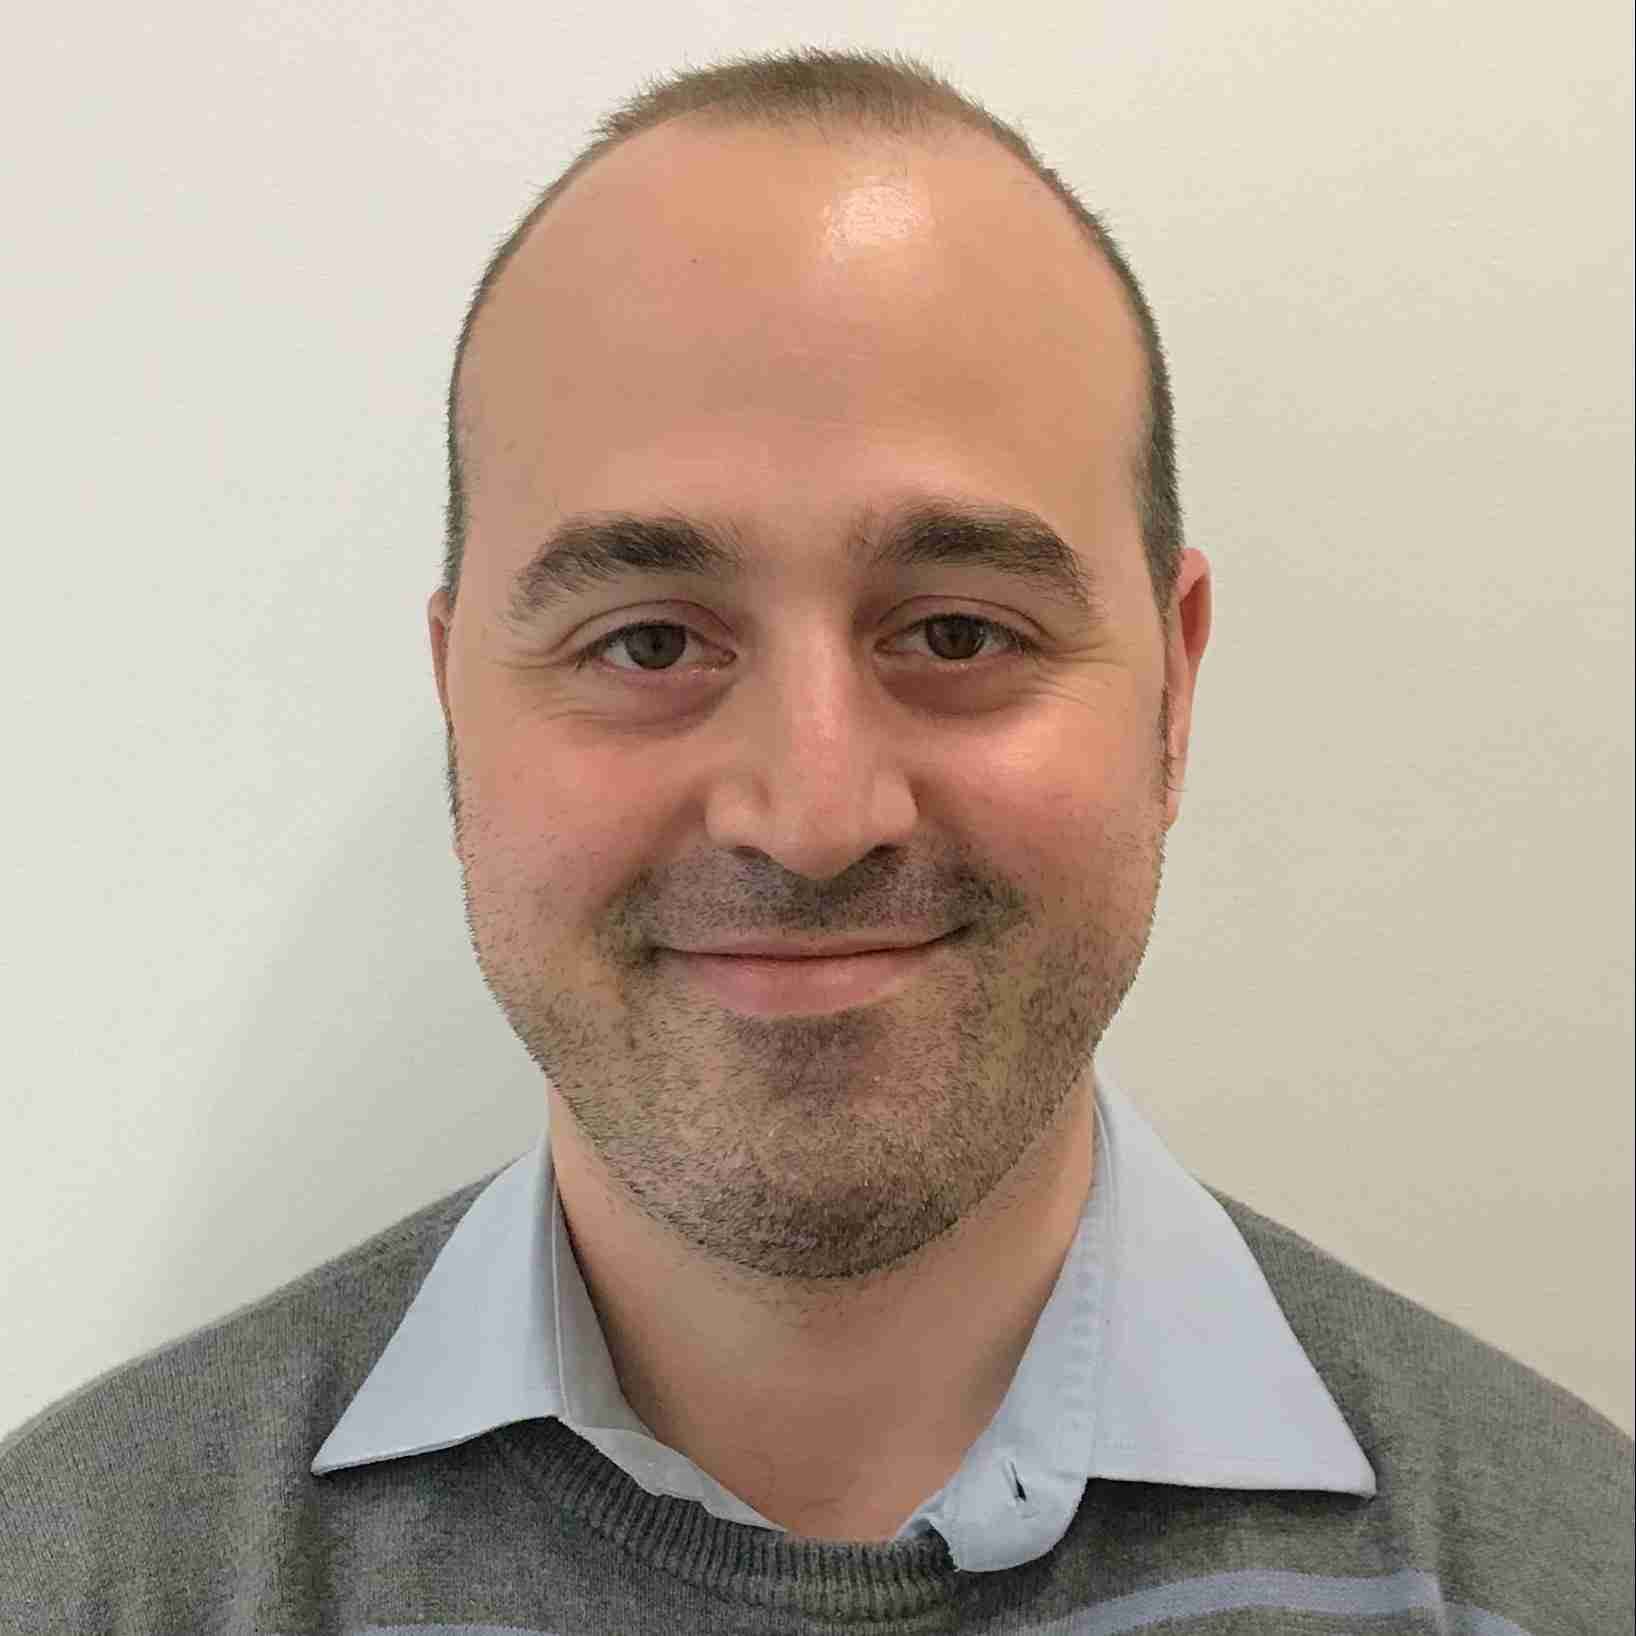 Profile image of Dr Mauro Rinaldi